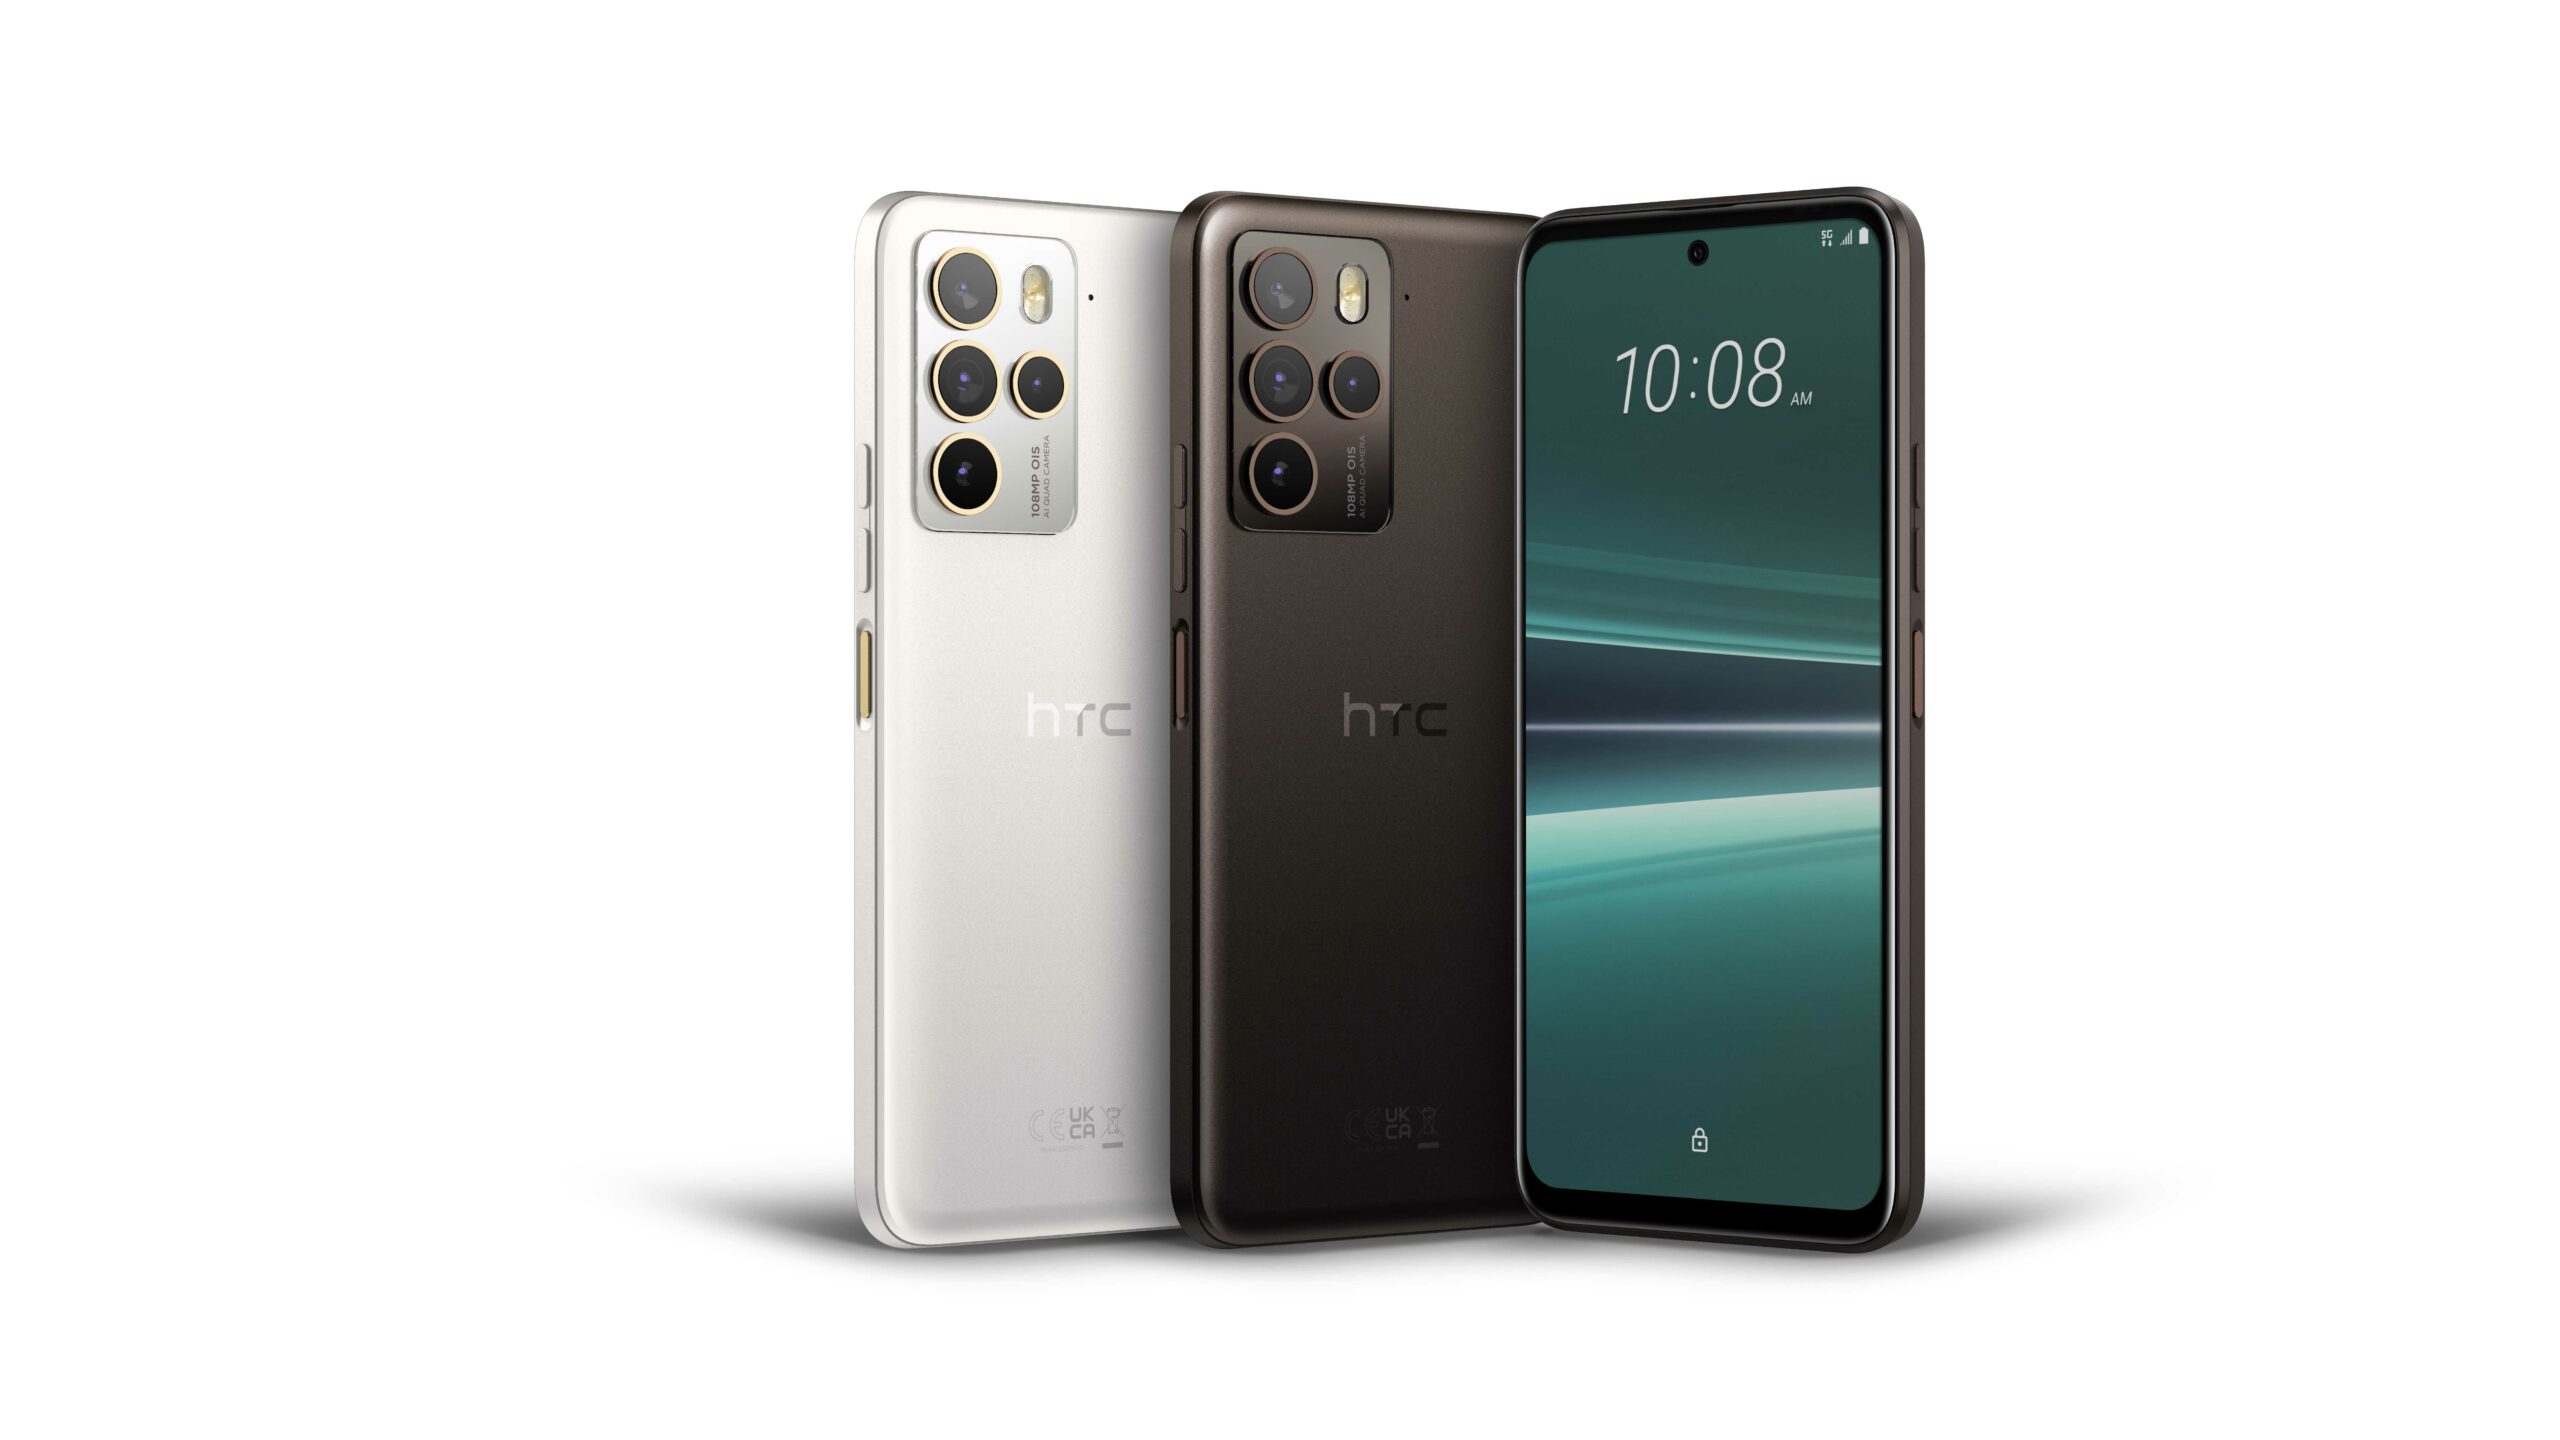 HTC U23 pro 億級畫素手機 6 月 1 日起三大電信正式開賣 搭配指定資費方案 手機 0 元開心帶回家 @3C 達人廖阿輝